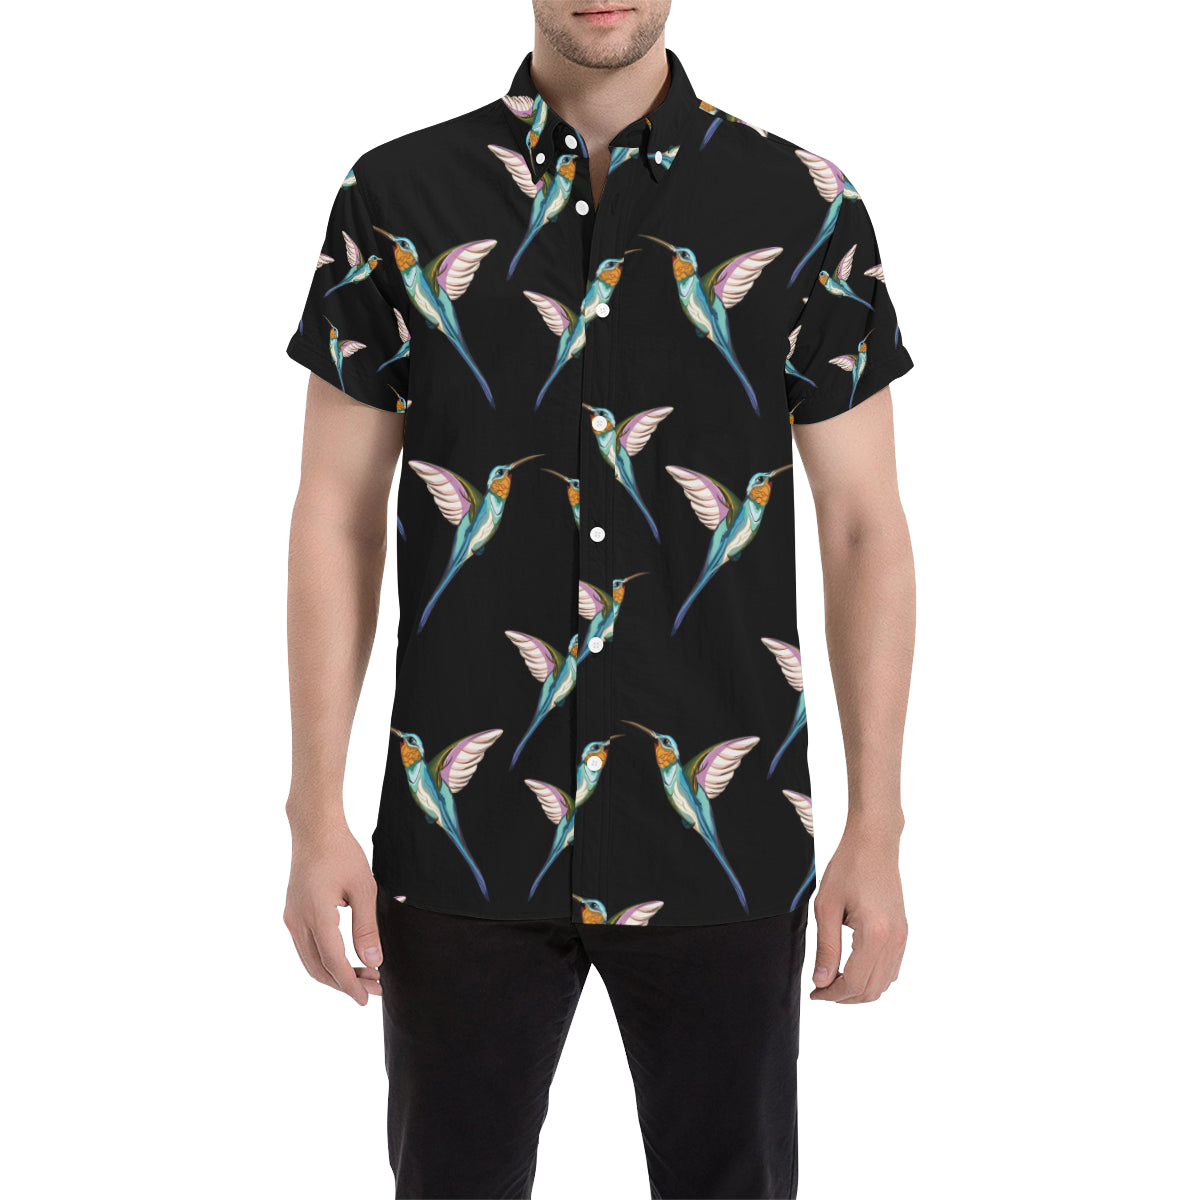 Hummingbird Pattern Print Design 06 Men's Short Sleeve Button Up Shirt